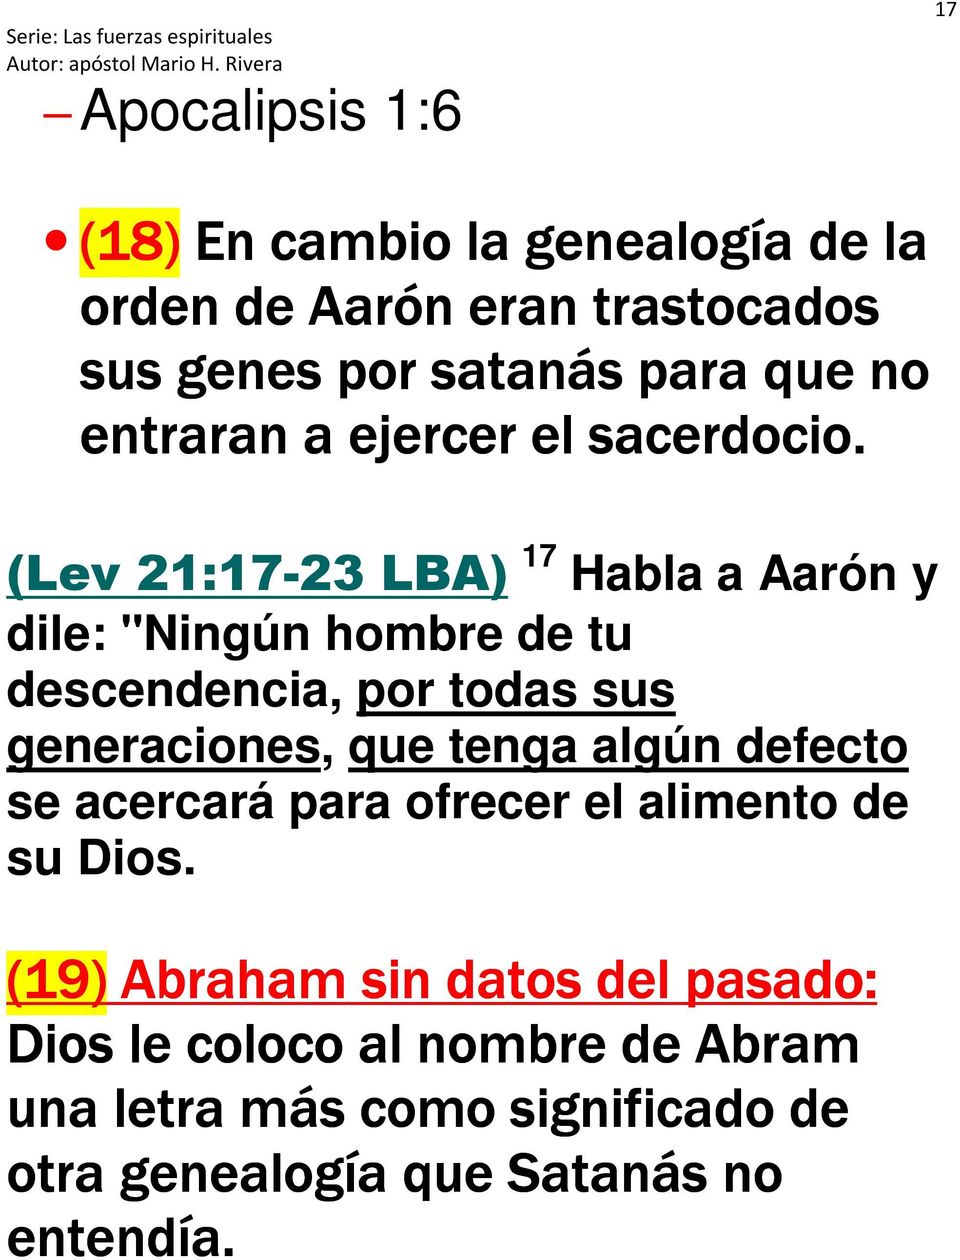 (Lev 21:17-23 LBA) 17 Habla a Aarón y dile: "Ningún hombre de tu descendencia, por todas sus generaciones, que tenga